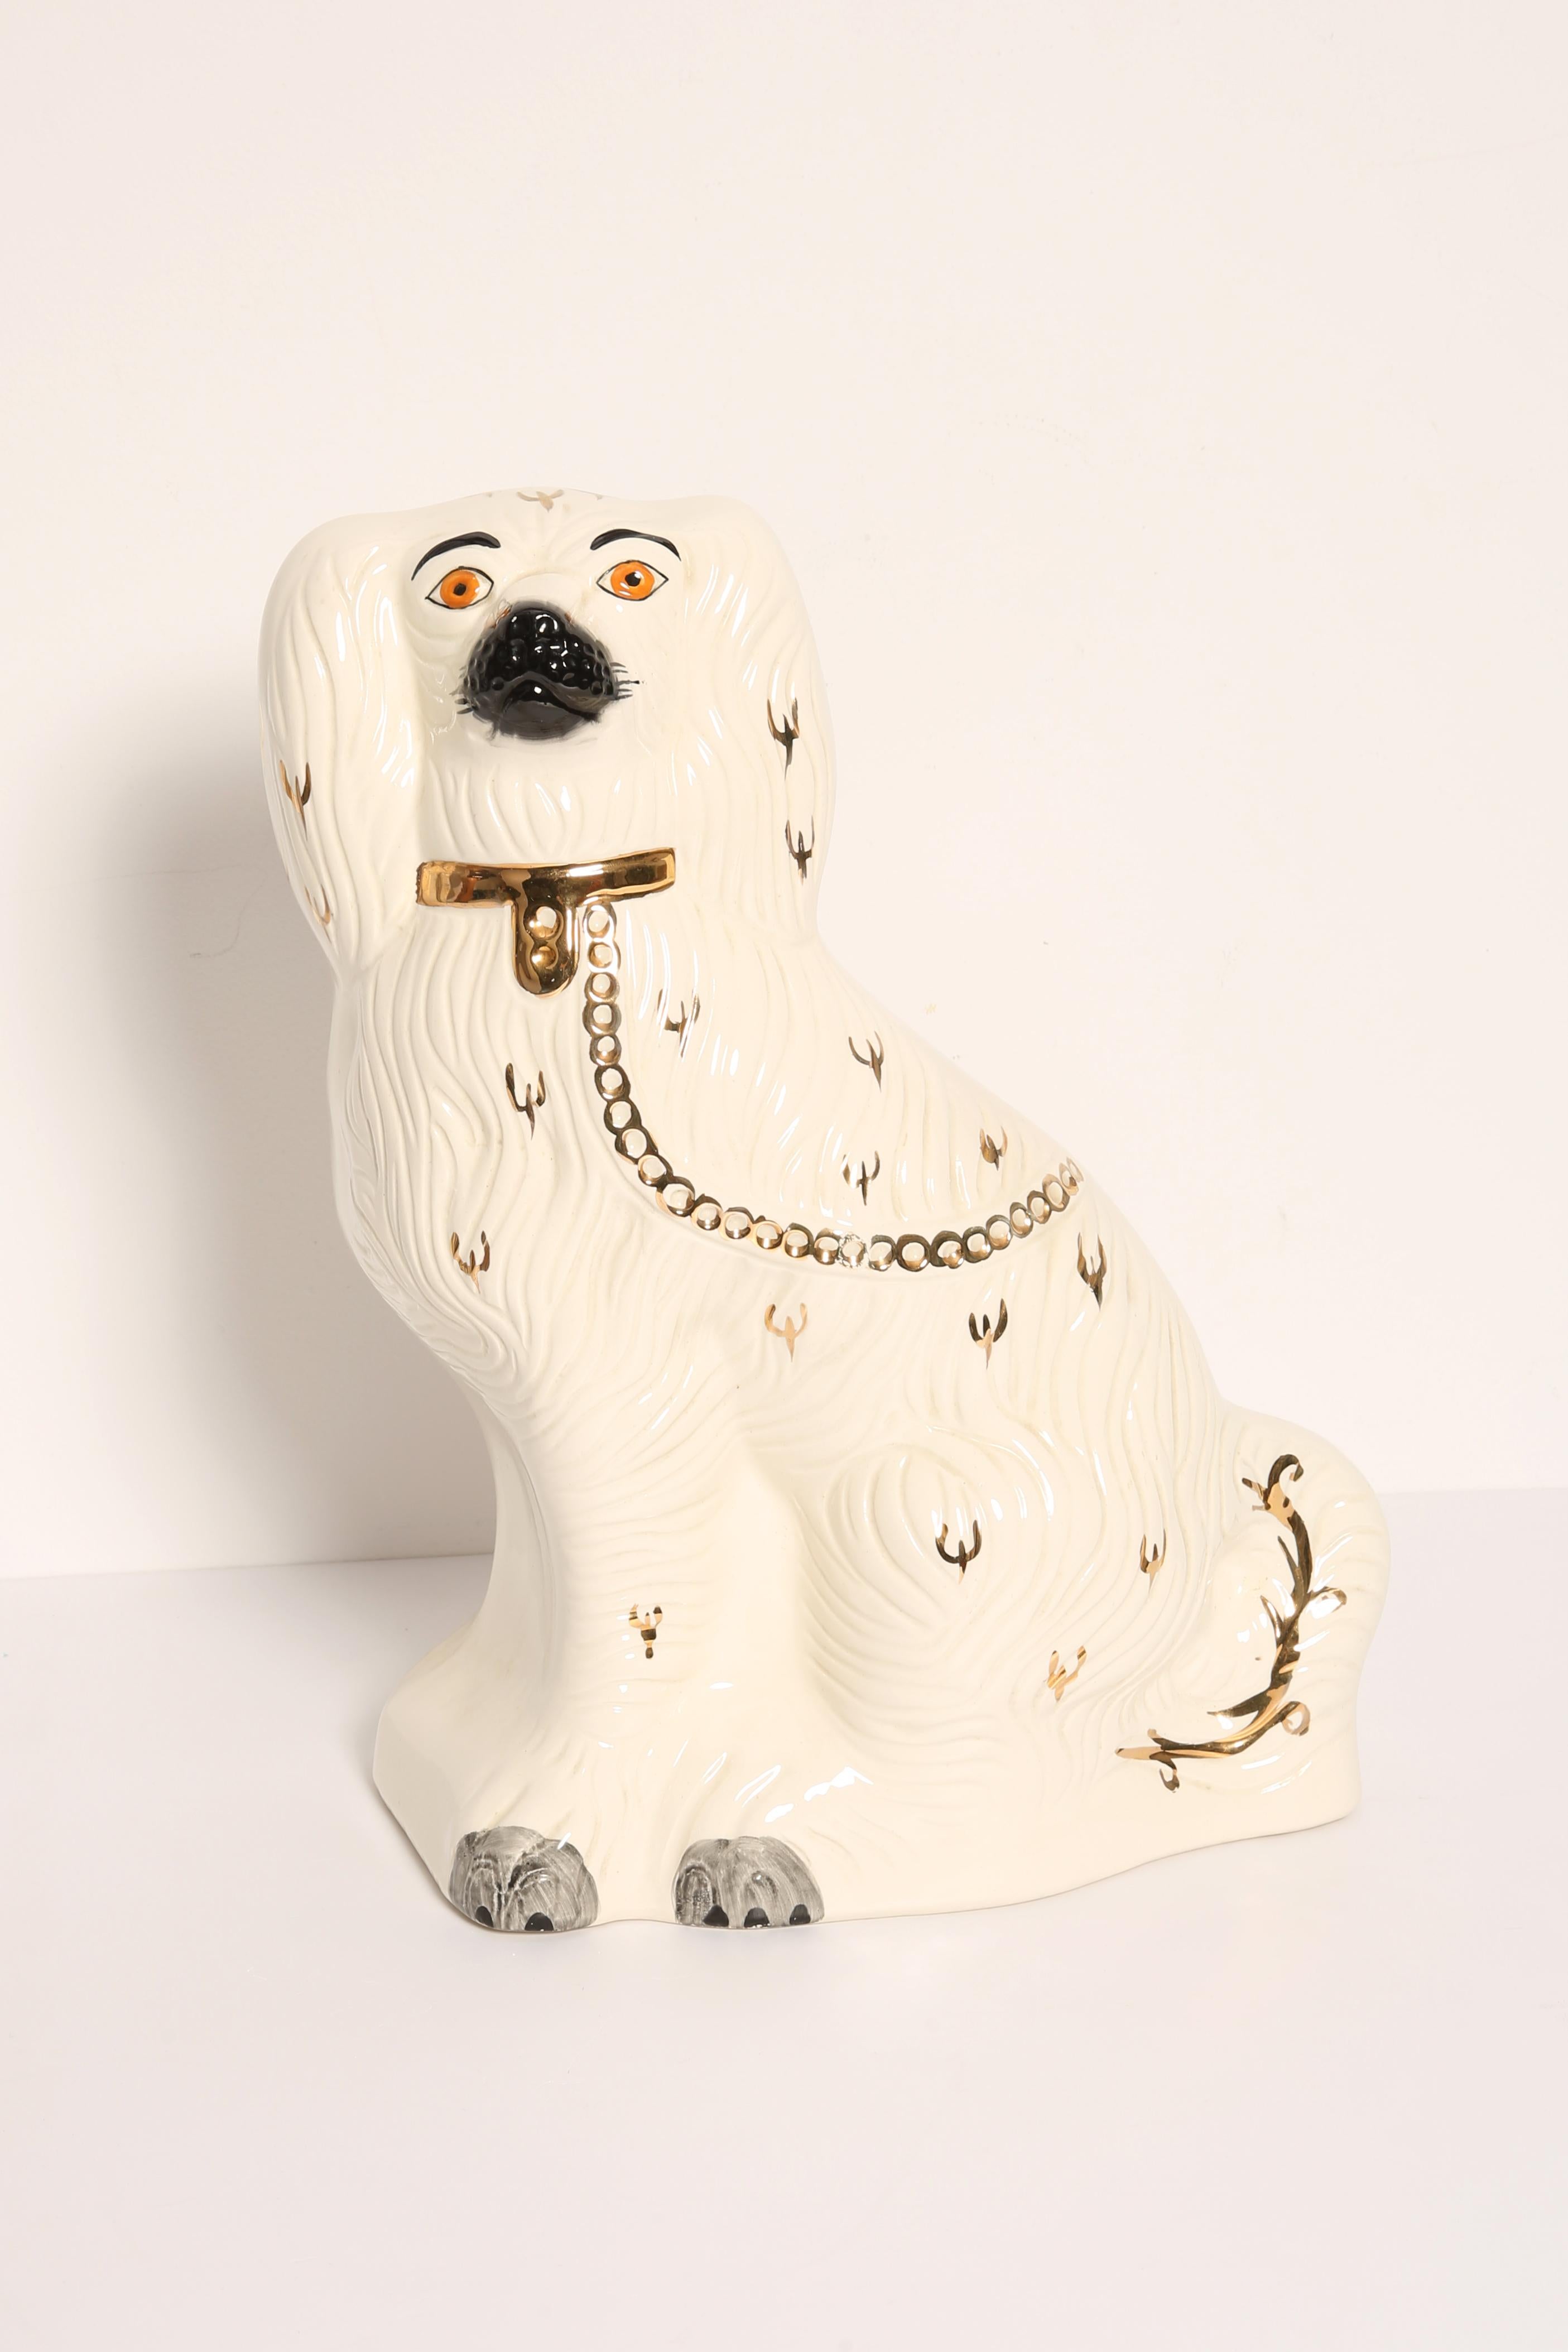 Bemalte Keramik, guter originaler Vintage-Zustand. Schöne und einzigartige dekorative Skulptur. Die Yorkshire Dog Sculpture wurde in den 1960er Jahren in Staffordshire, England, hergestellt.